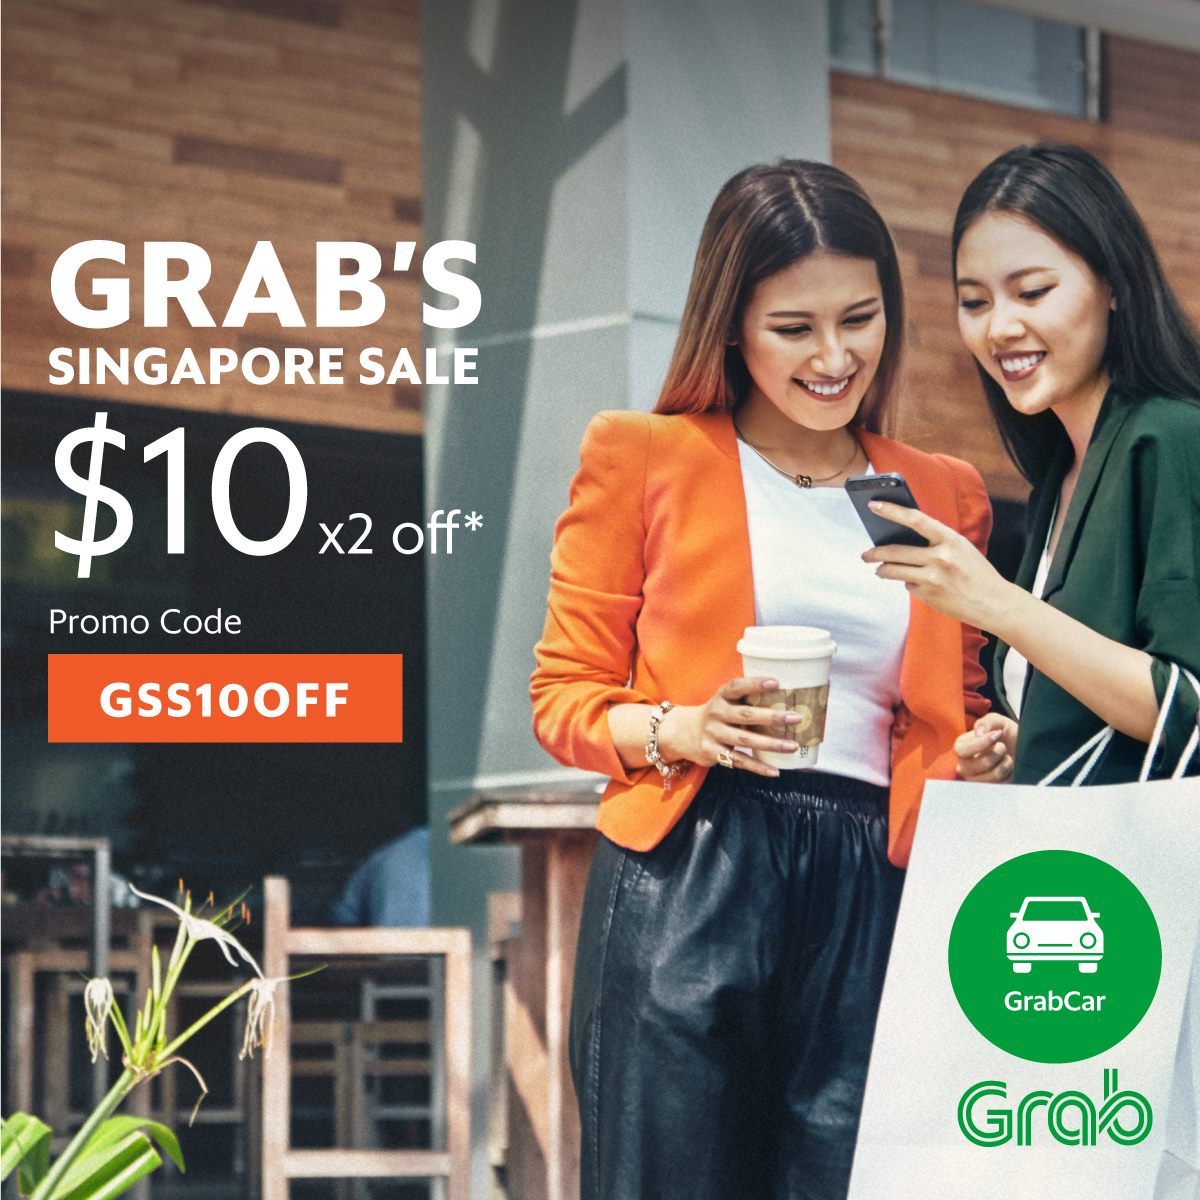 Grab Singapore Sale $10 Off ends 30 Jun 2016